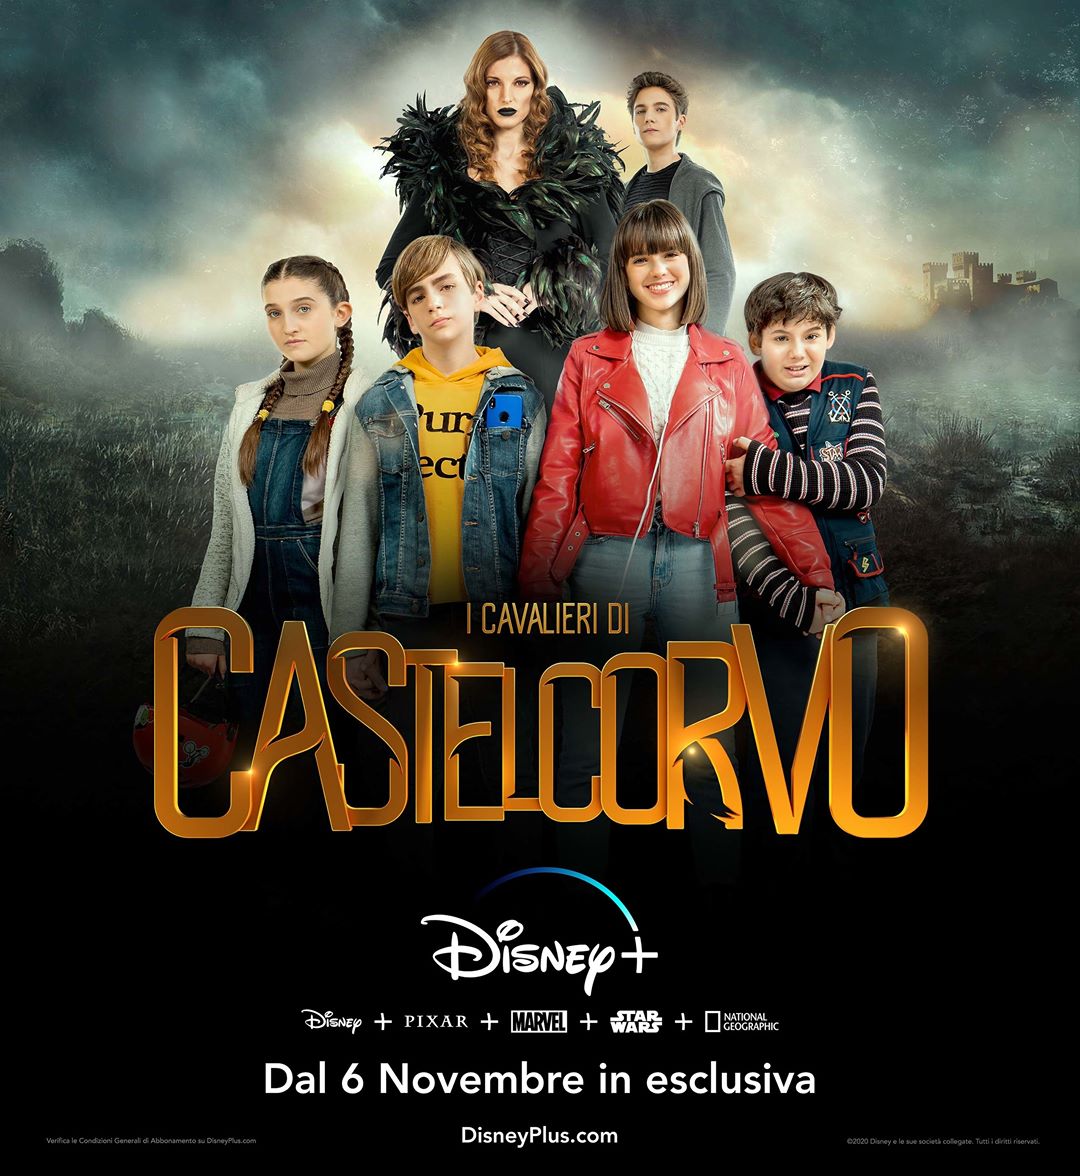 I Cavalieri di Castelcorvo, dal 6 novembre su Disney+